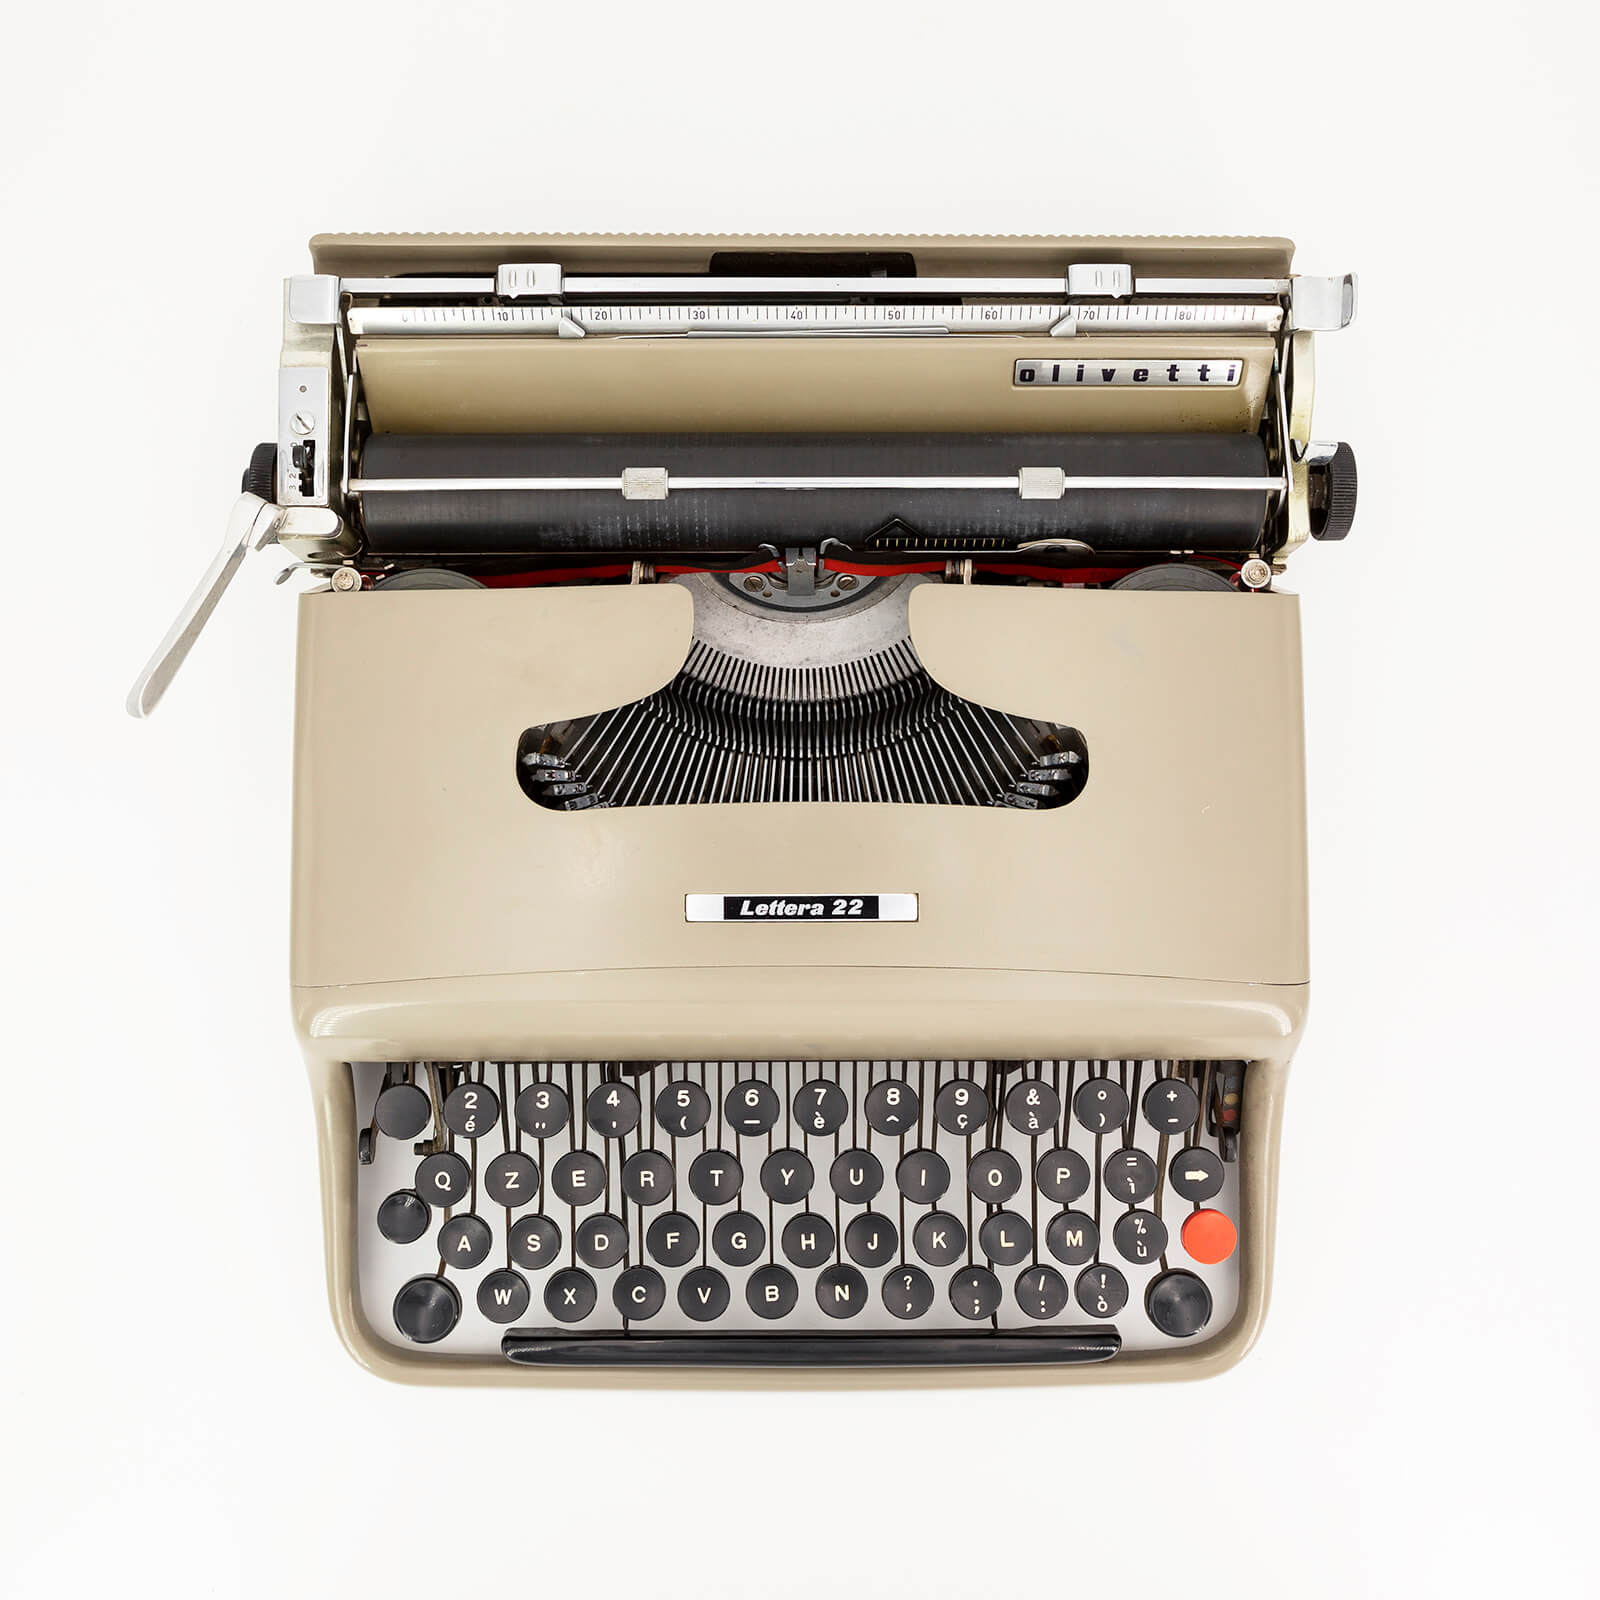 designer italiani famosi macchina da scrivere letterea 22 olivetti di nizzoli